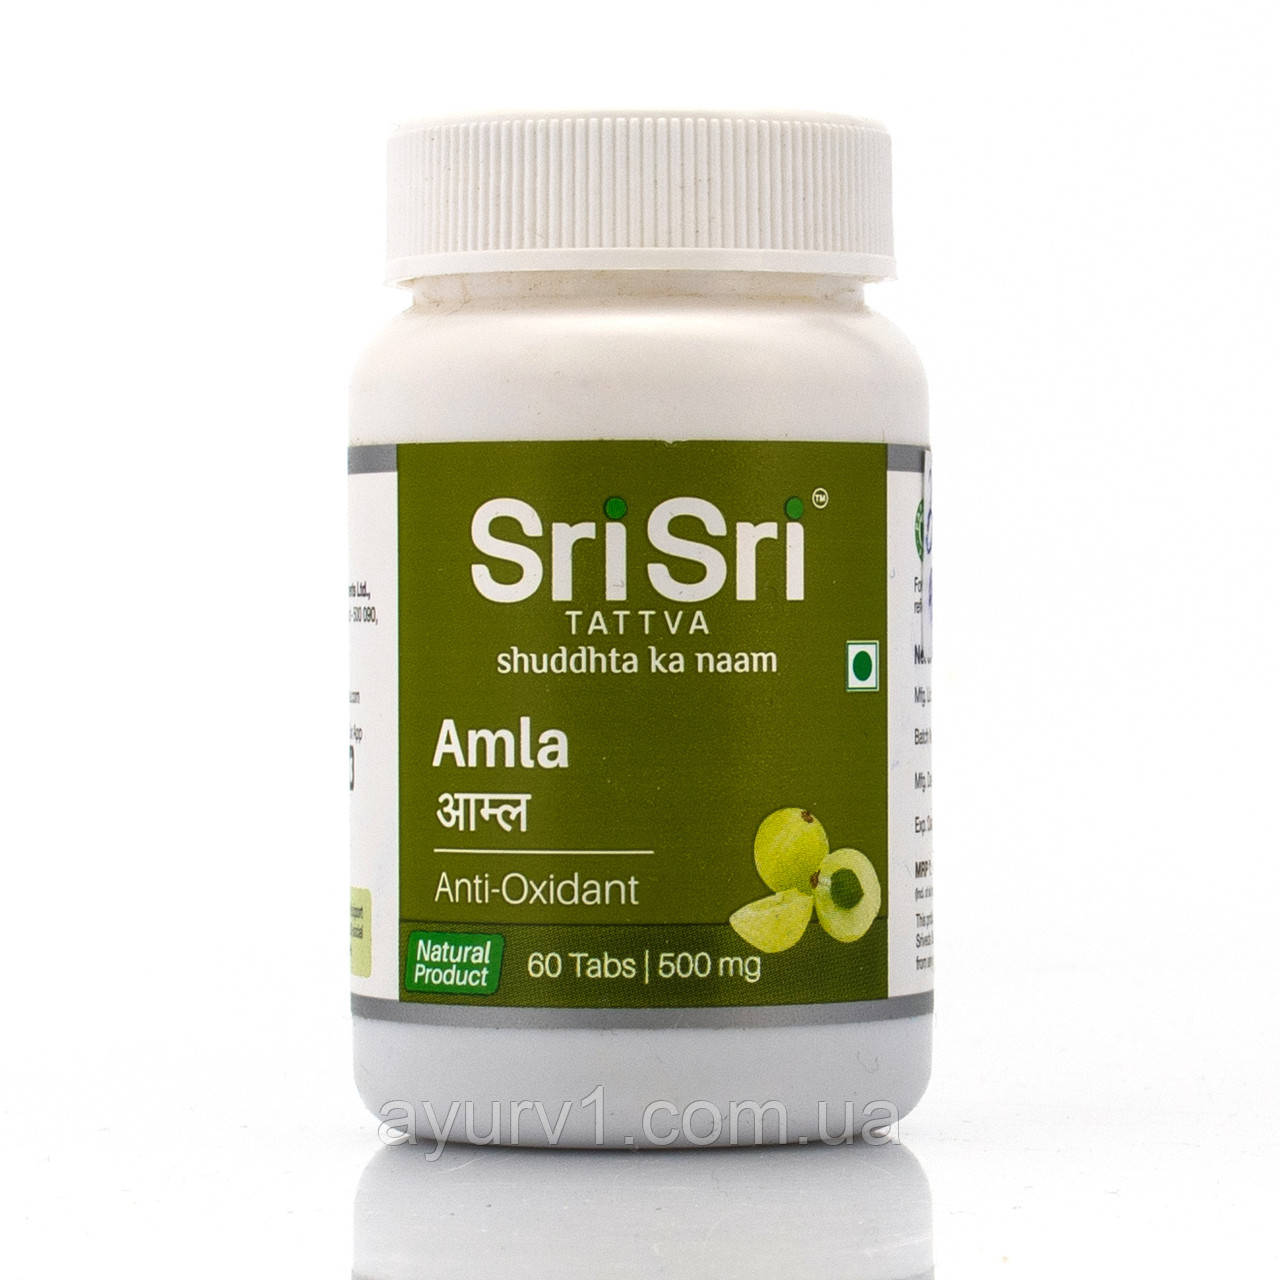 Амла індійський крижовник, Шрі-Сріра Аюрведа, Amla, Sri Sri Ayurveda, 60 tab натуральний вітамін С,